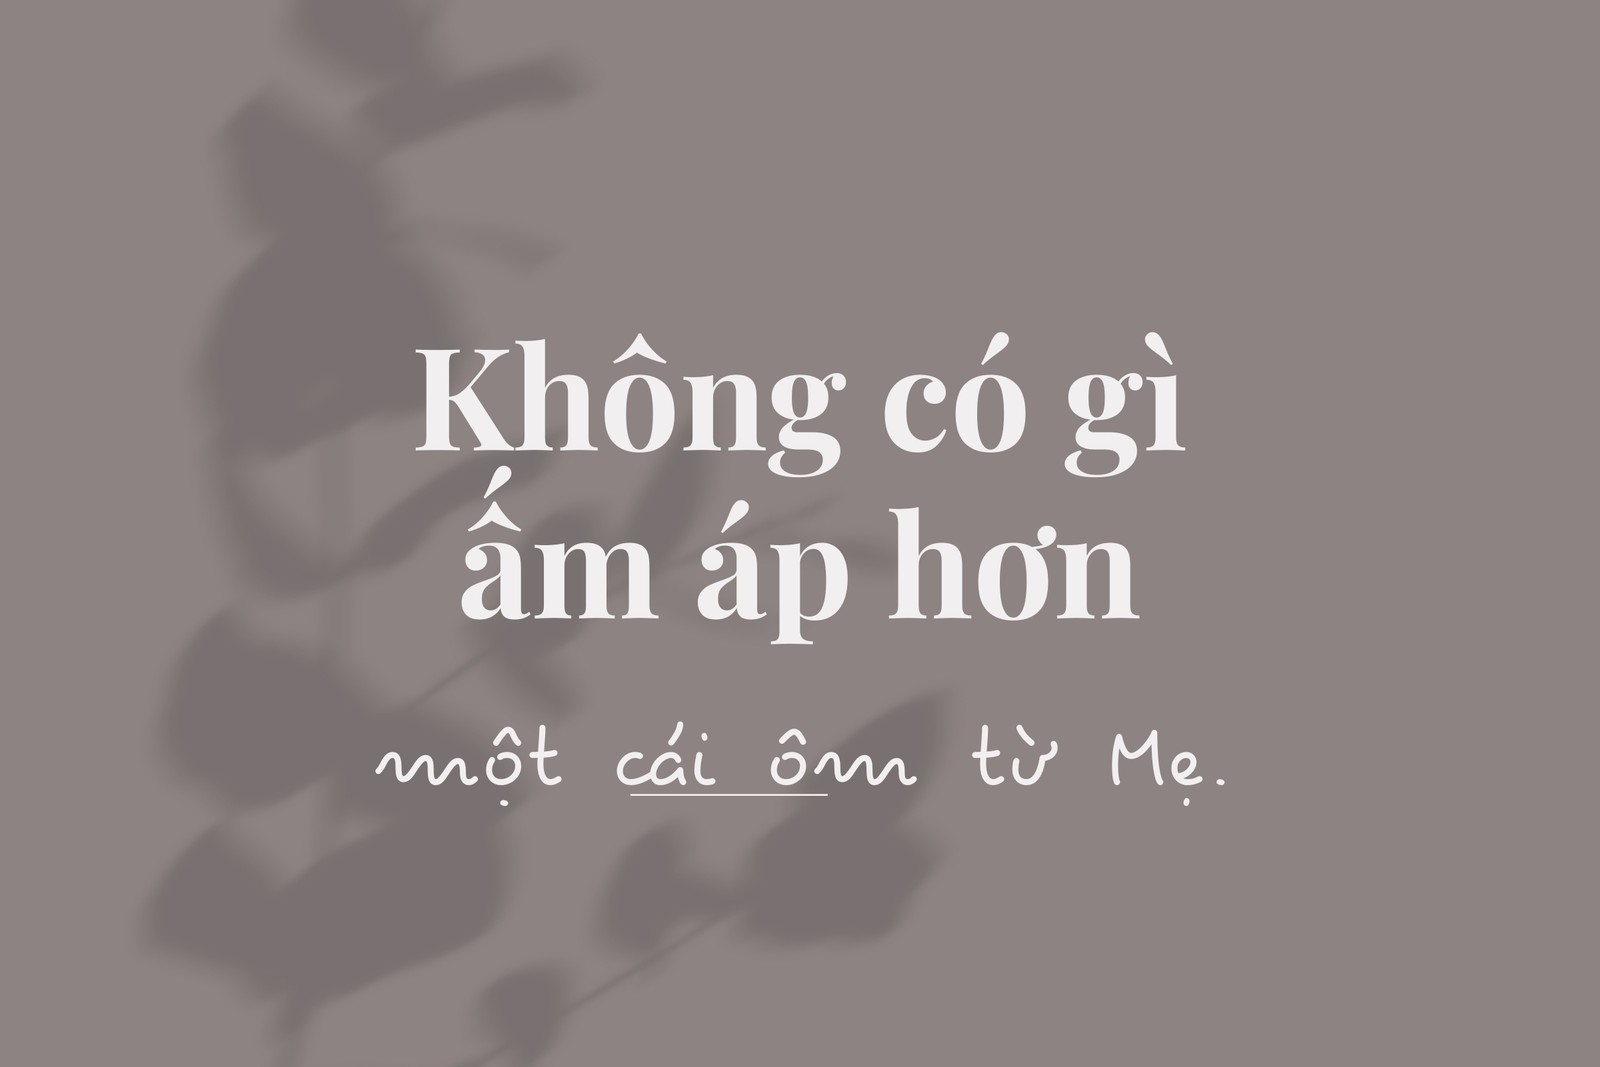 Dành cho những ai đang tìm kiếm bảng chữ cái tiếng Việt chuyên nghiệp và đầy đủ nhất, chúng tôi đã sẵn sàng cung cấp cho bạn điều đó. Với bảng chữ cái này, bạn có thể hoàn thành các thiết kế của mình một cách nhanh chóng và chuyên nghiệp hơn bao giờ hết. Hãy xem ngay hình ảnh tương ứng để tải bảng chữ cái về.